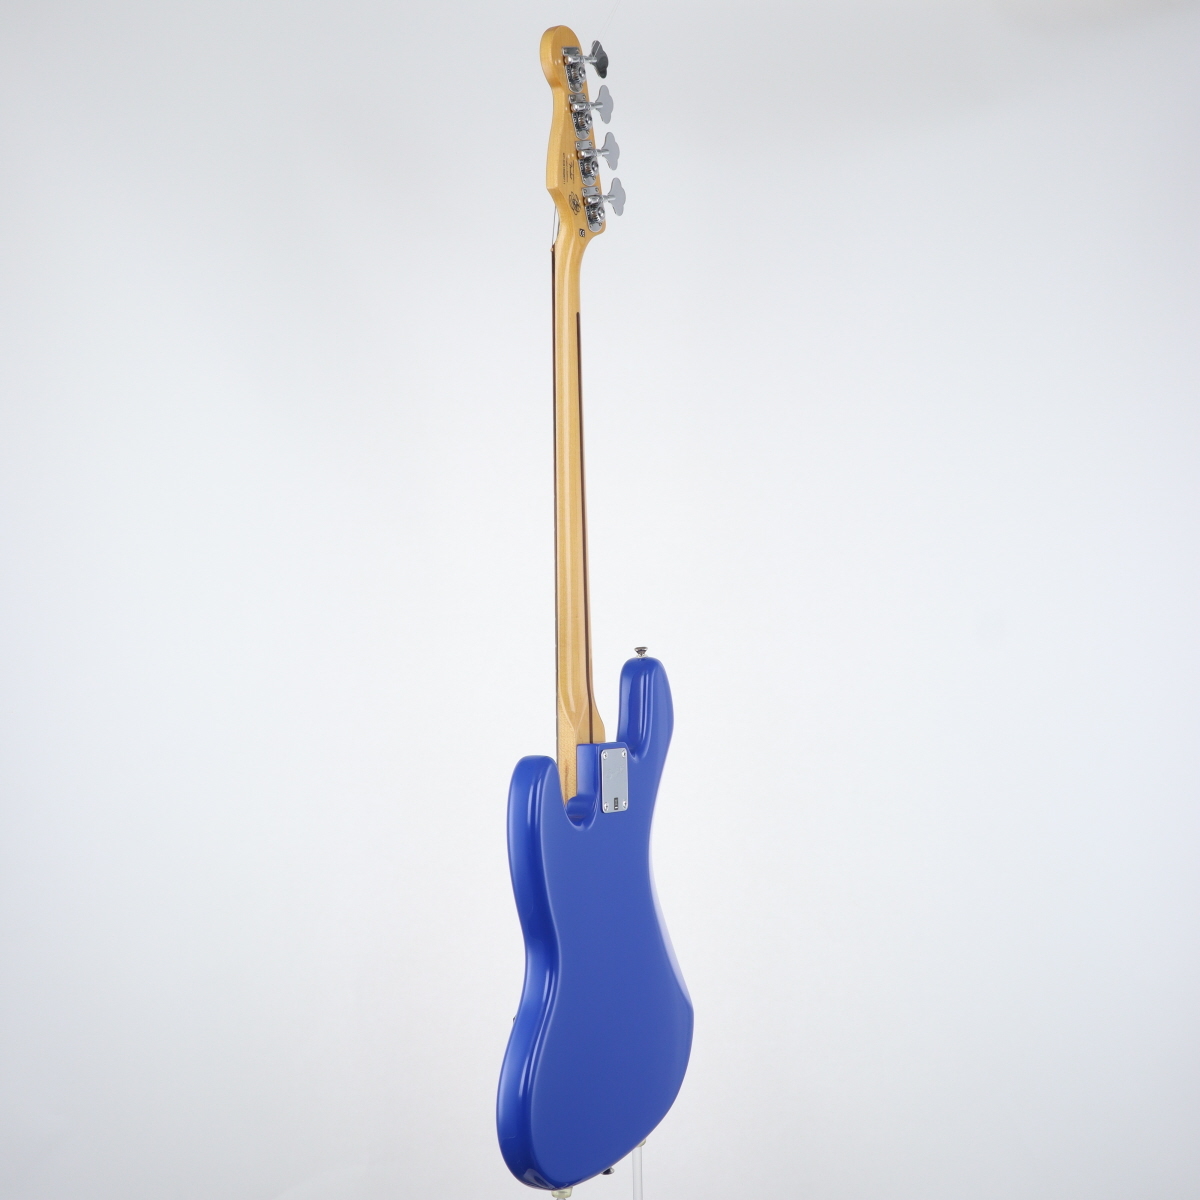 Squier by Fender Tomomi Jazz Bass “Bluetus” Sky Blue【心斎橋店 